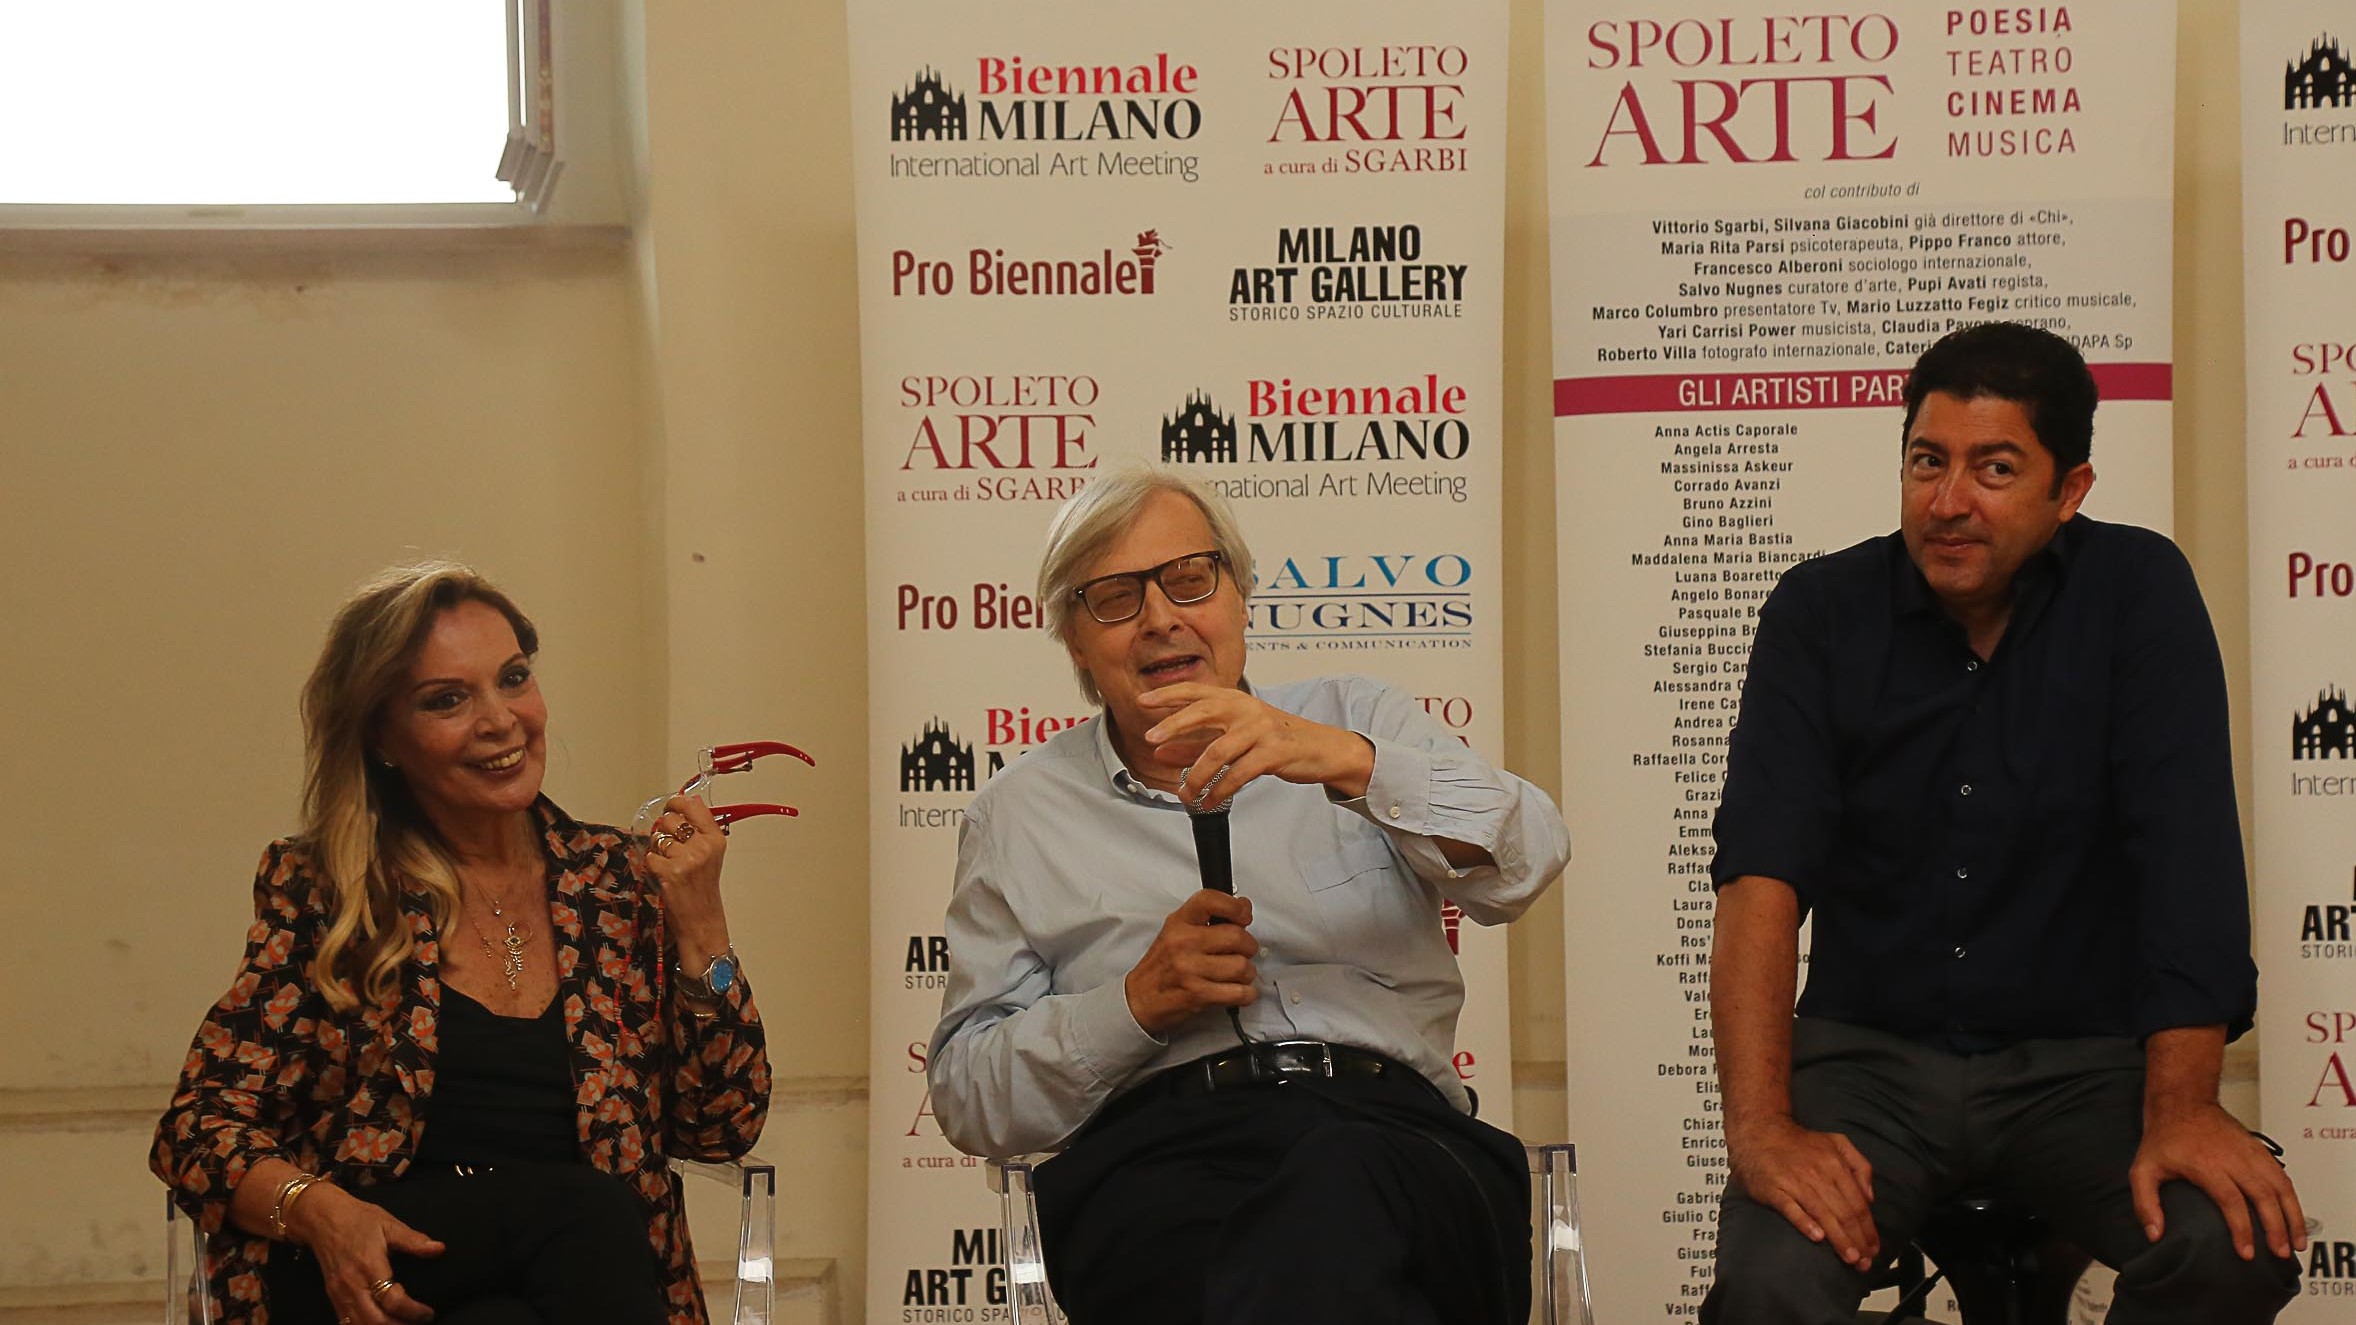 Spoleto Arte: Salvo Nugnes, Vittorio Sgarbi e tanti altri all’inaugurazione della mostra internazionale 